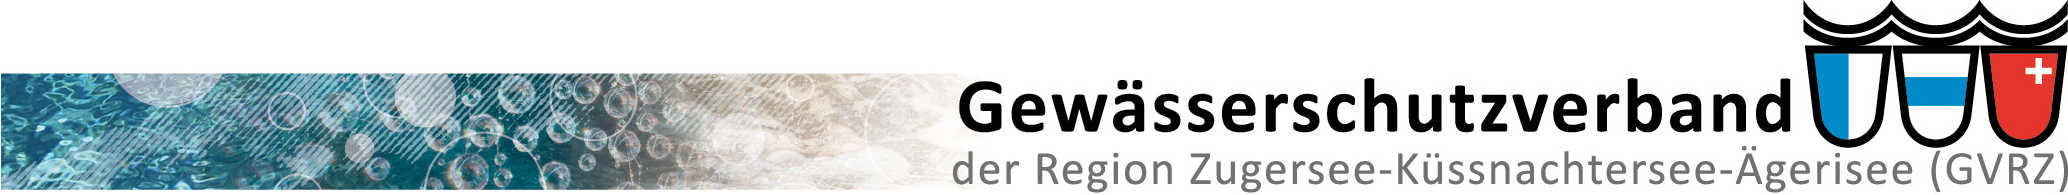 Logo Gewaesserschutzverband GVRZ